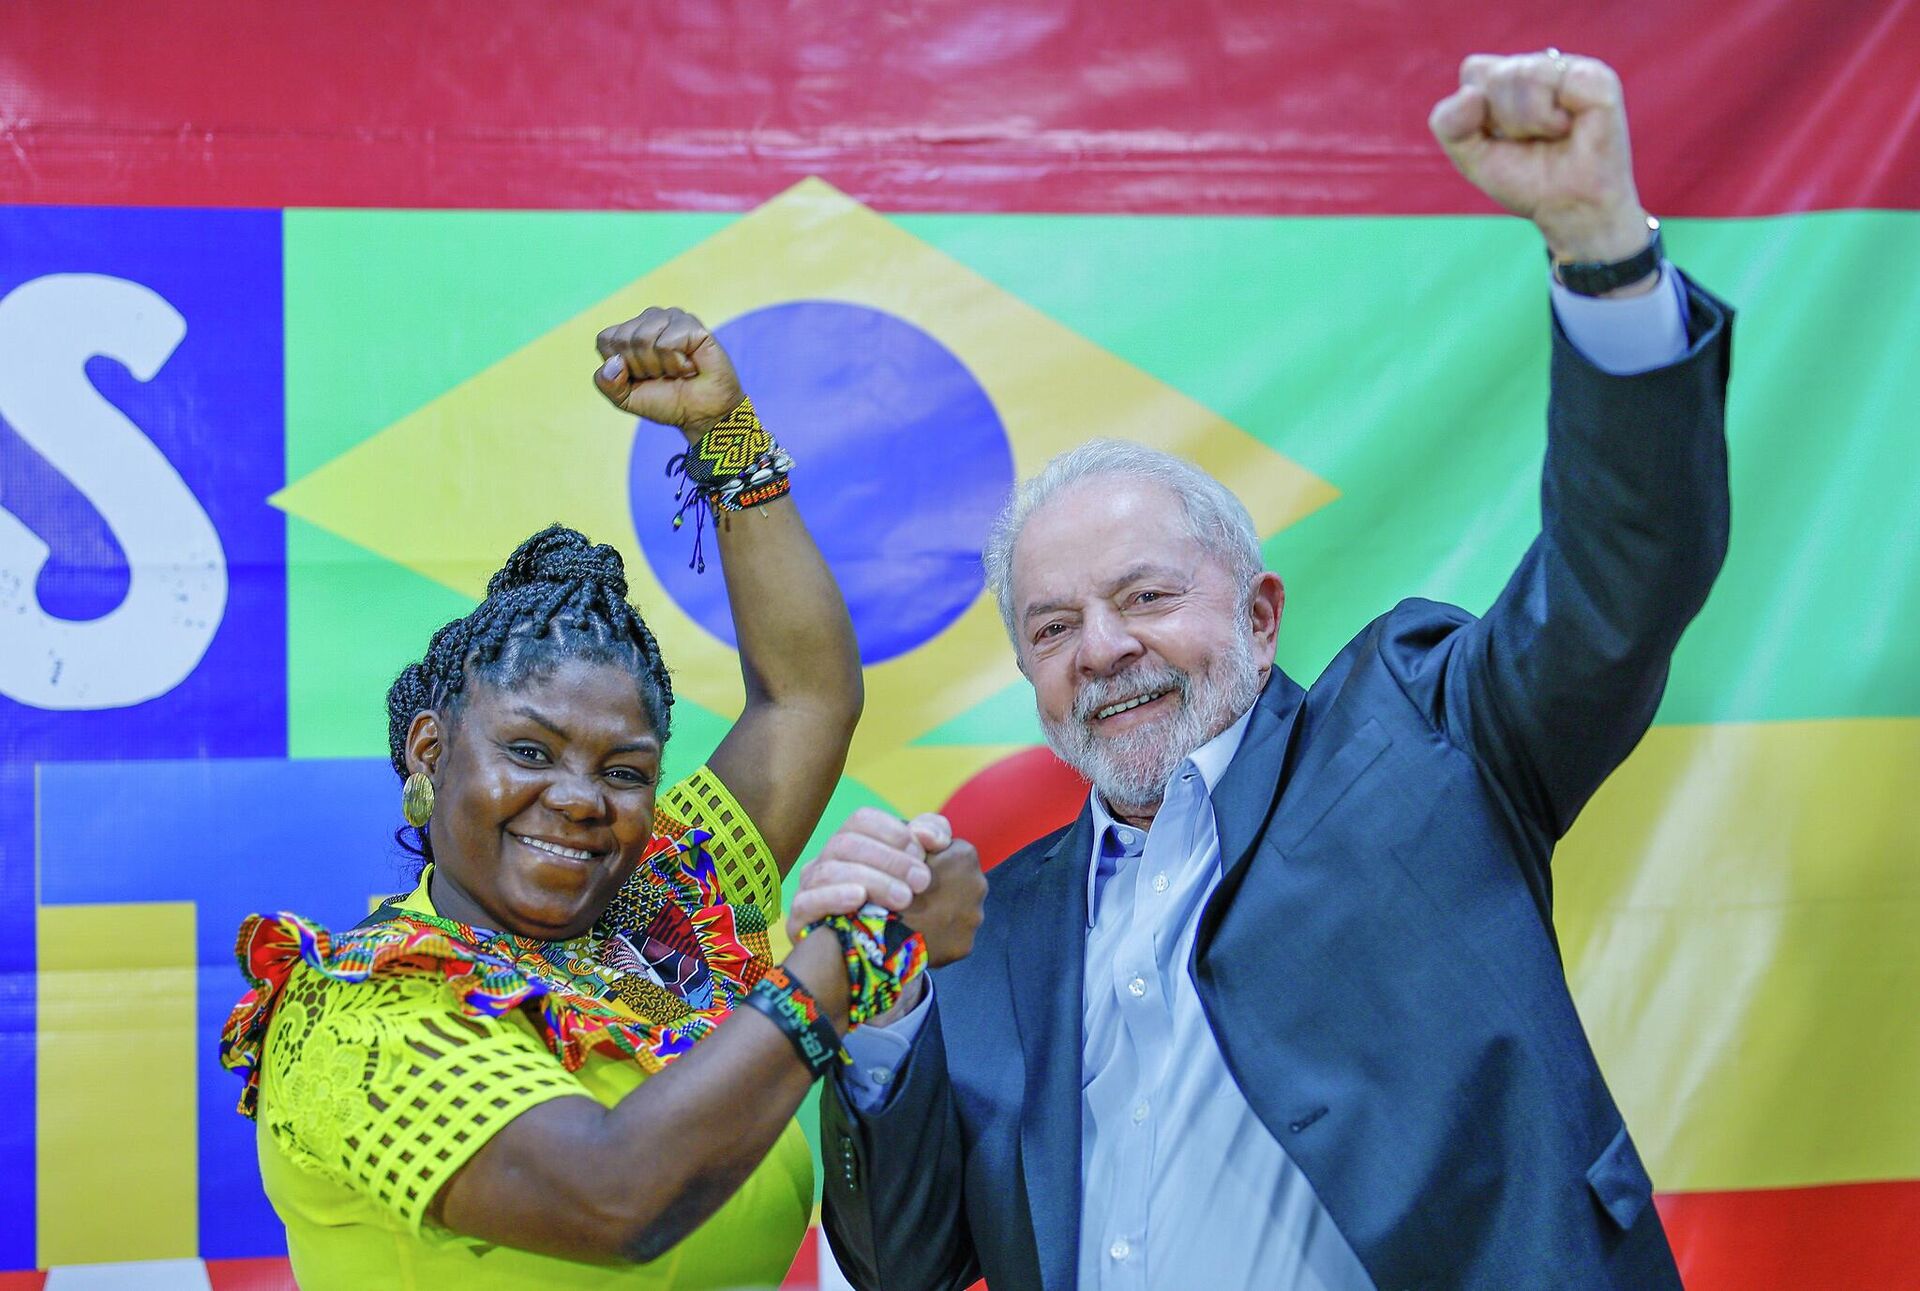 O então candidato à presidência do Brasil Luiz Inácio Lula da Silva recebe a vice-presidente da Colômbia, Francia Márquez, em 26 de julho de 2022, em São Paulo - Sputnik Brasil, 1920, 31.10.2022